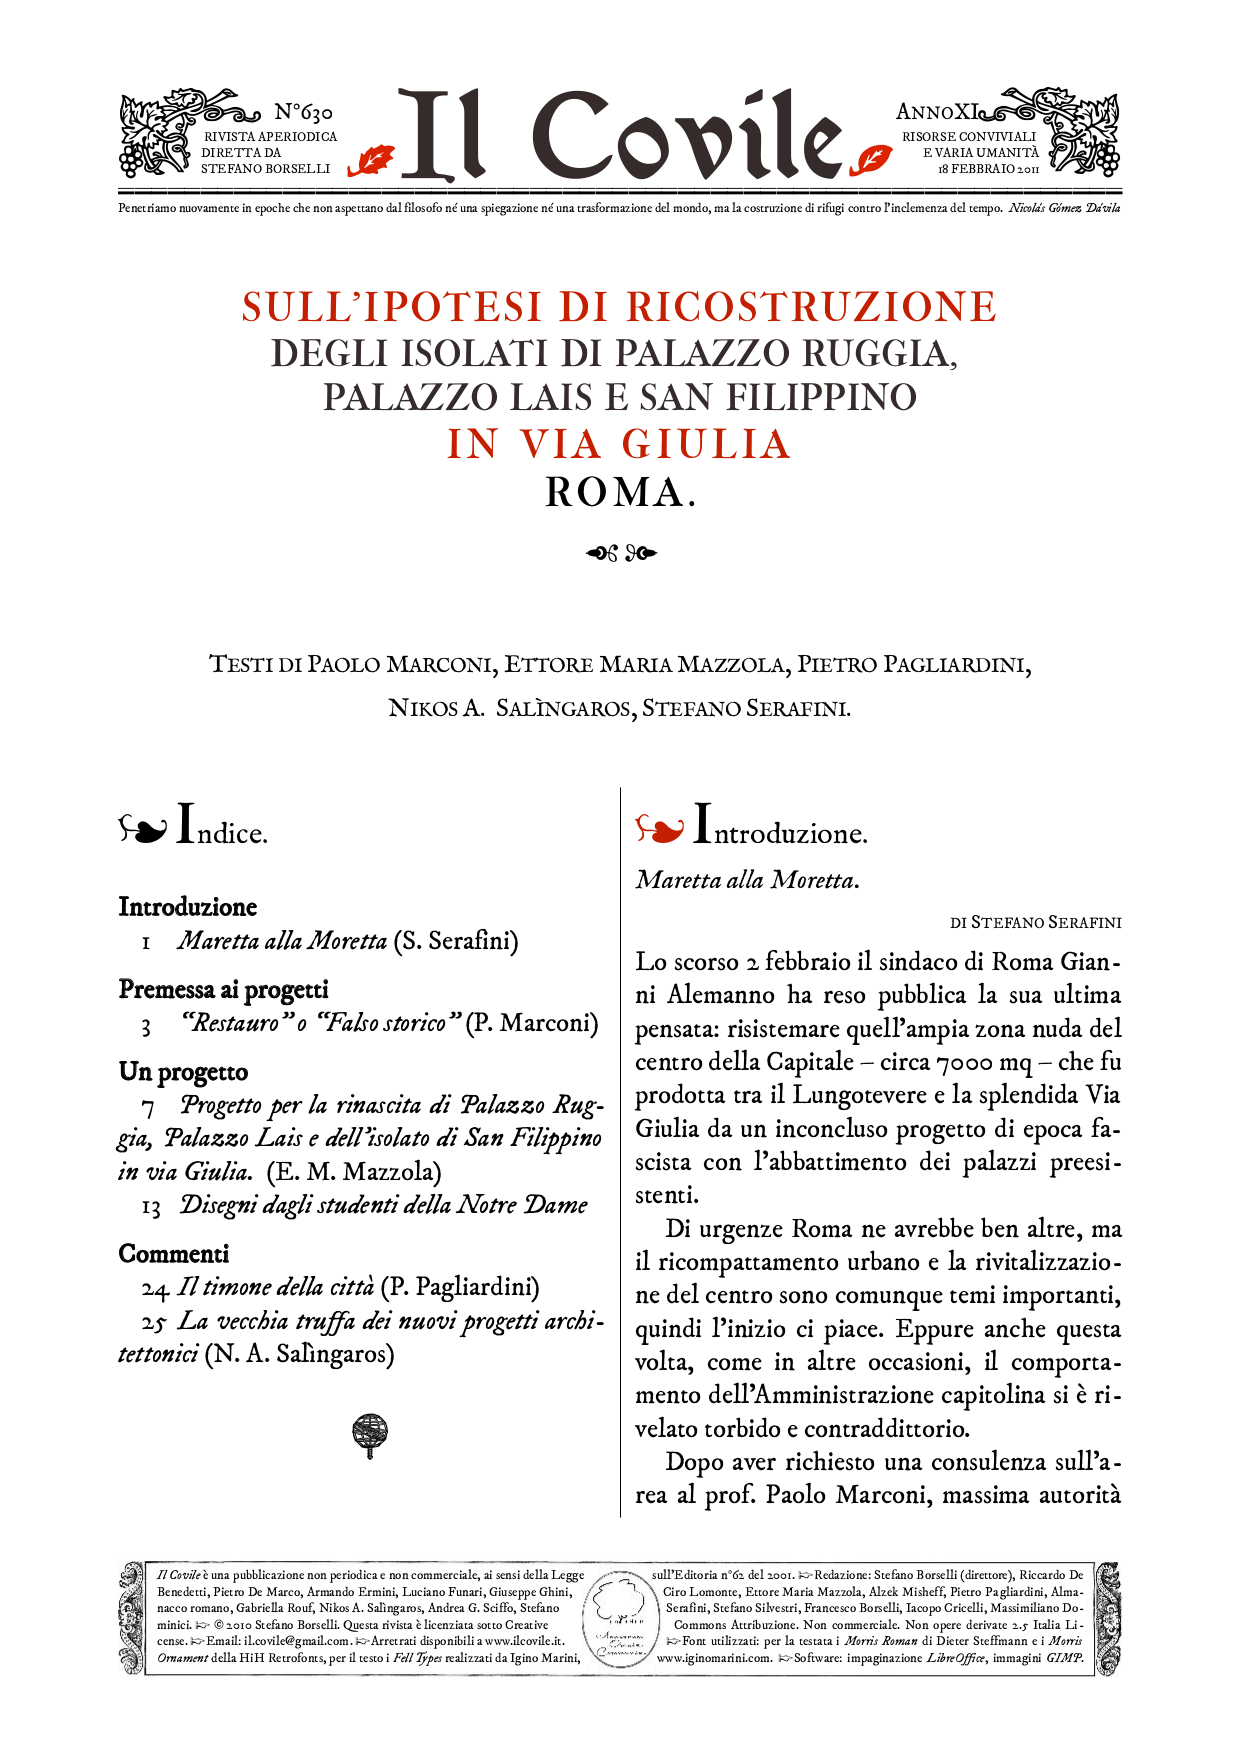 Copertina di Sull'ipotesi di ricostruzione in via Giulia, Roma.